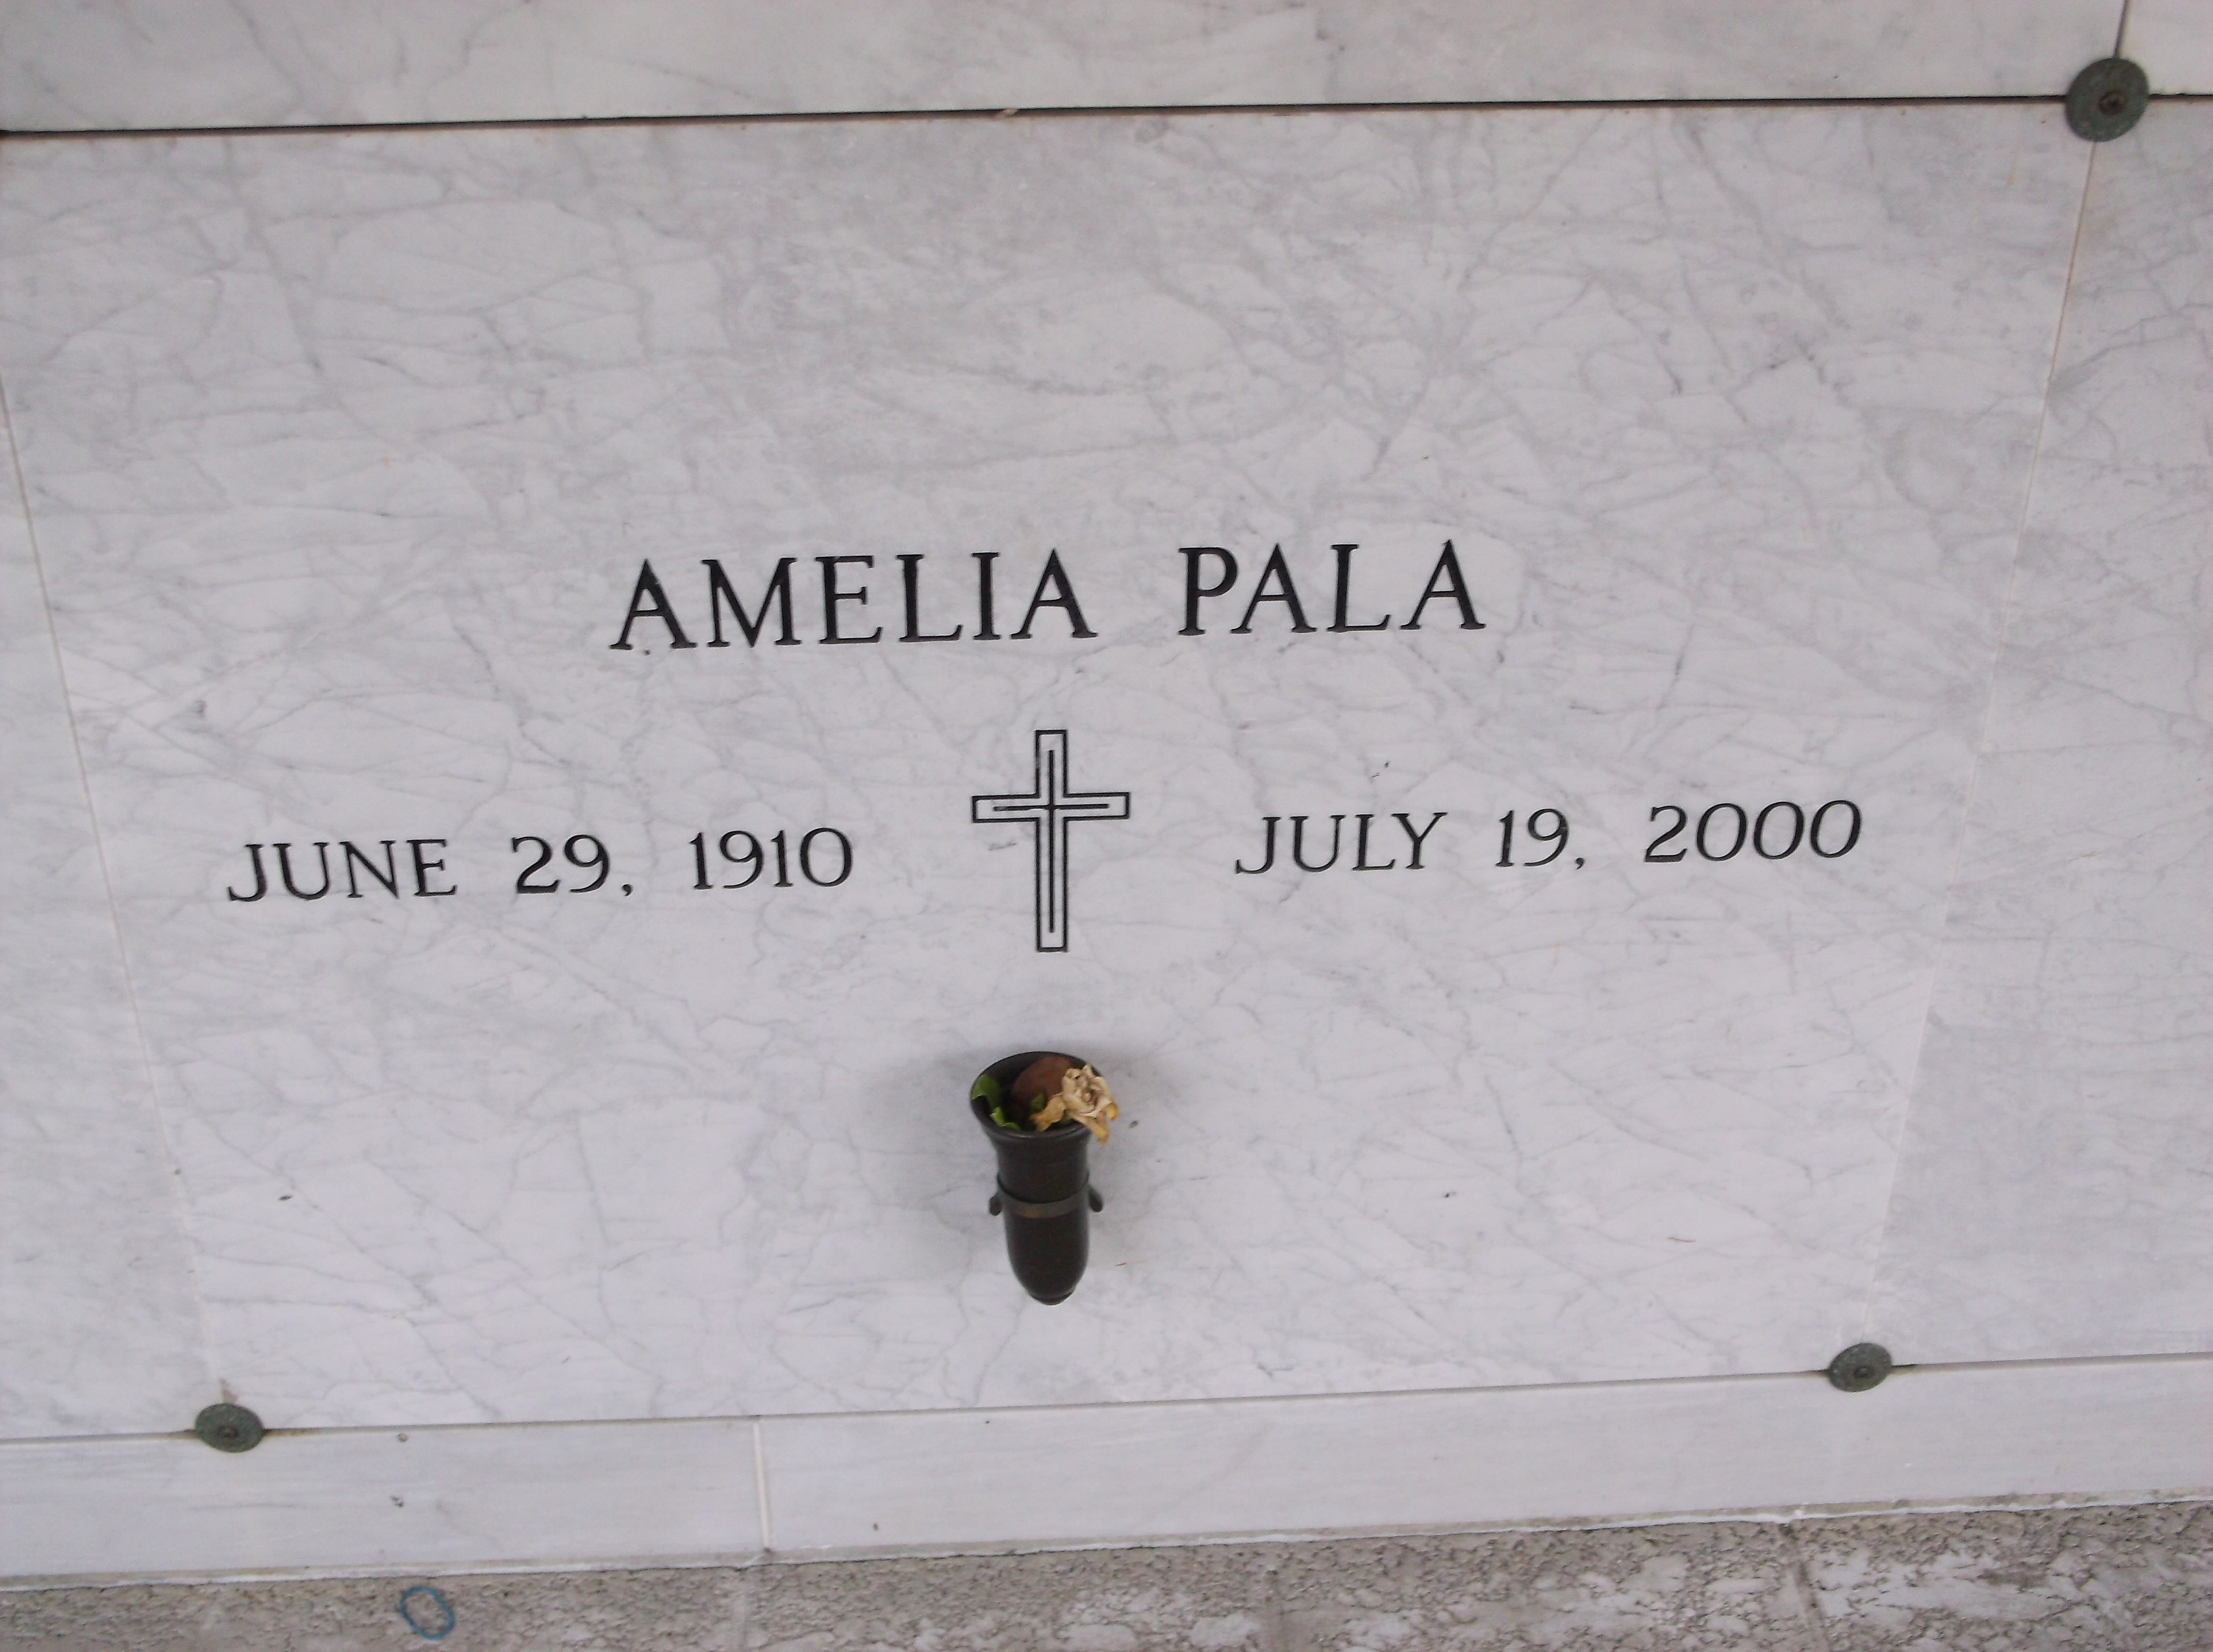 Amelia Pala